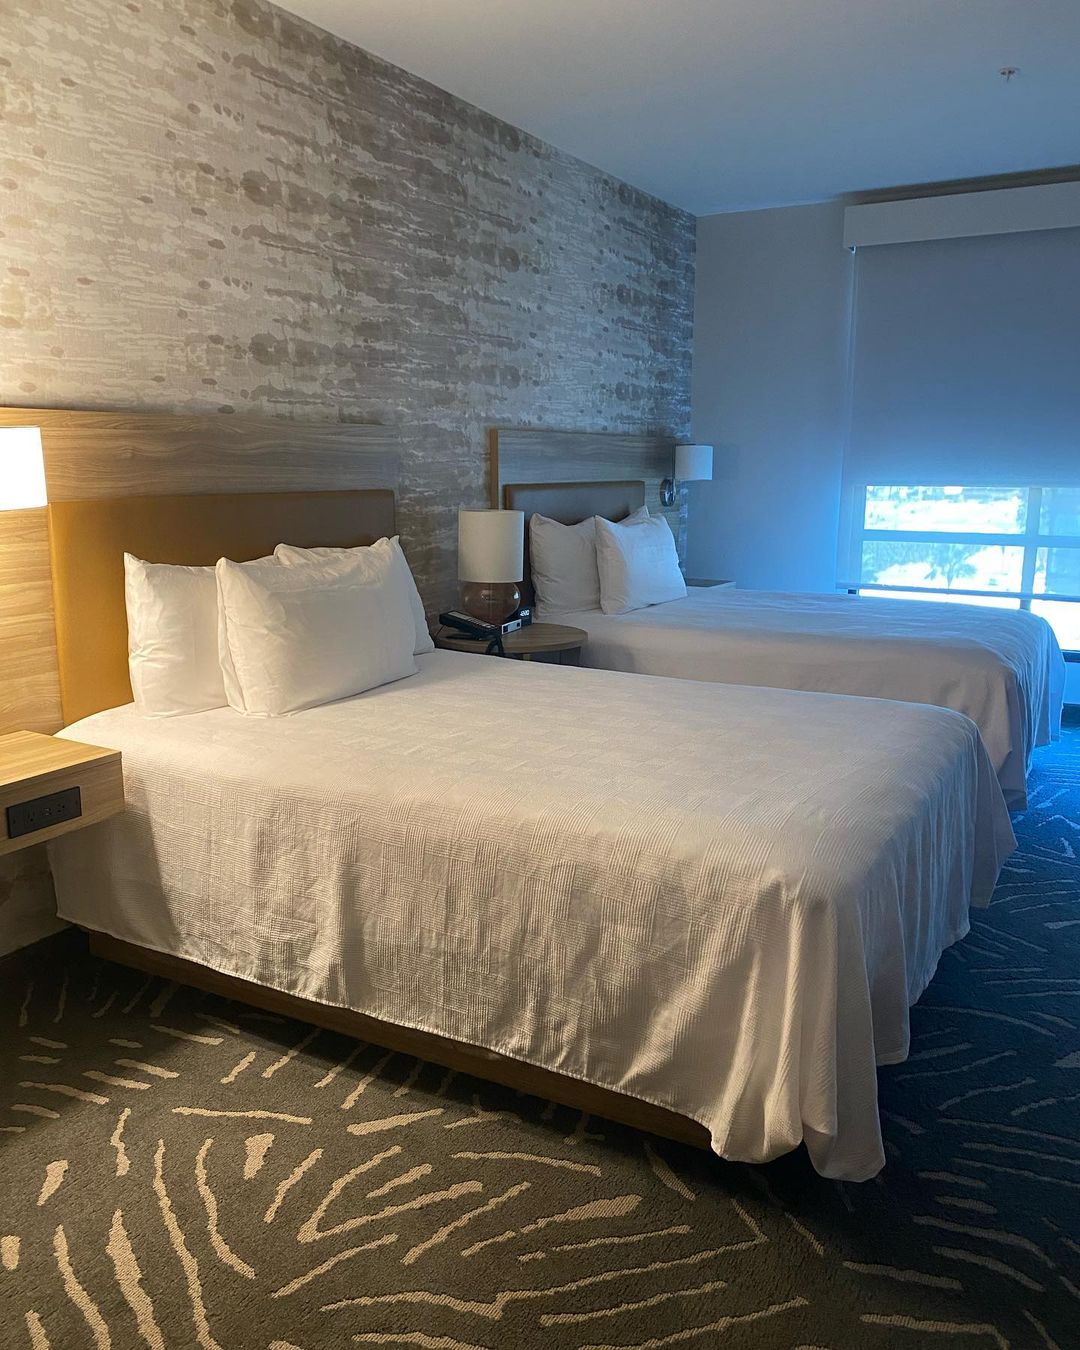 Room at Home2 Suites es uno de los mejores hoteles cerca de Disneyland California